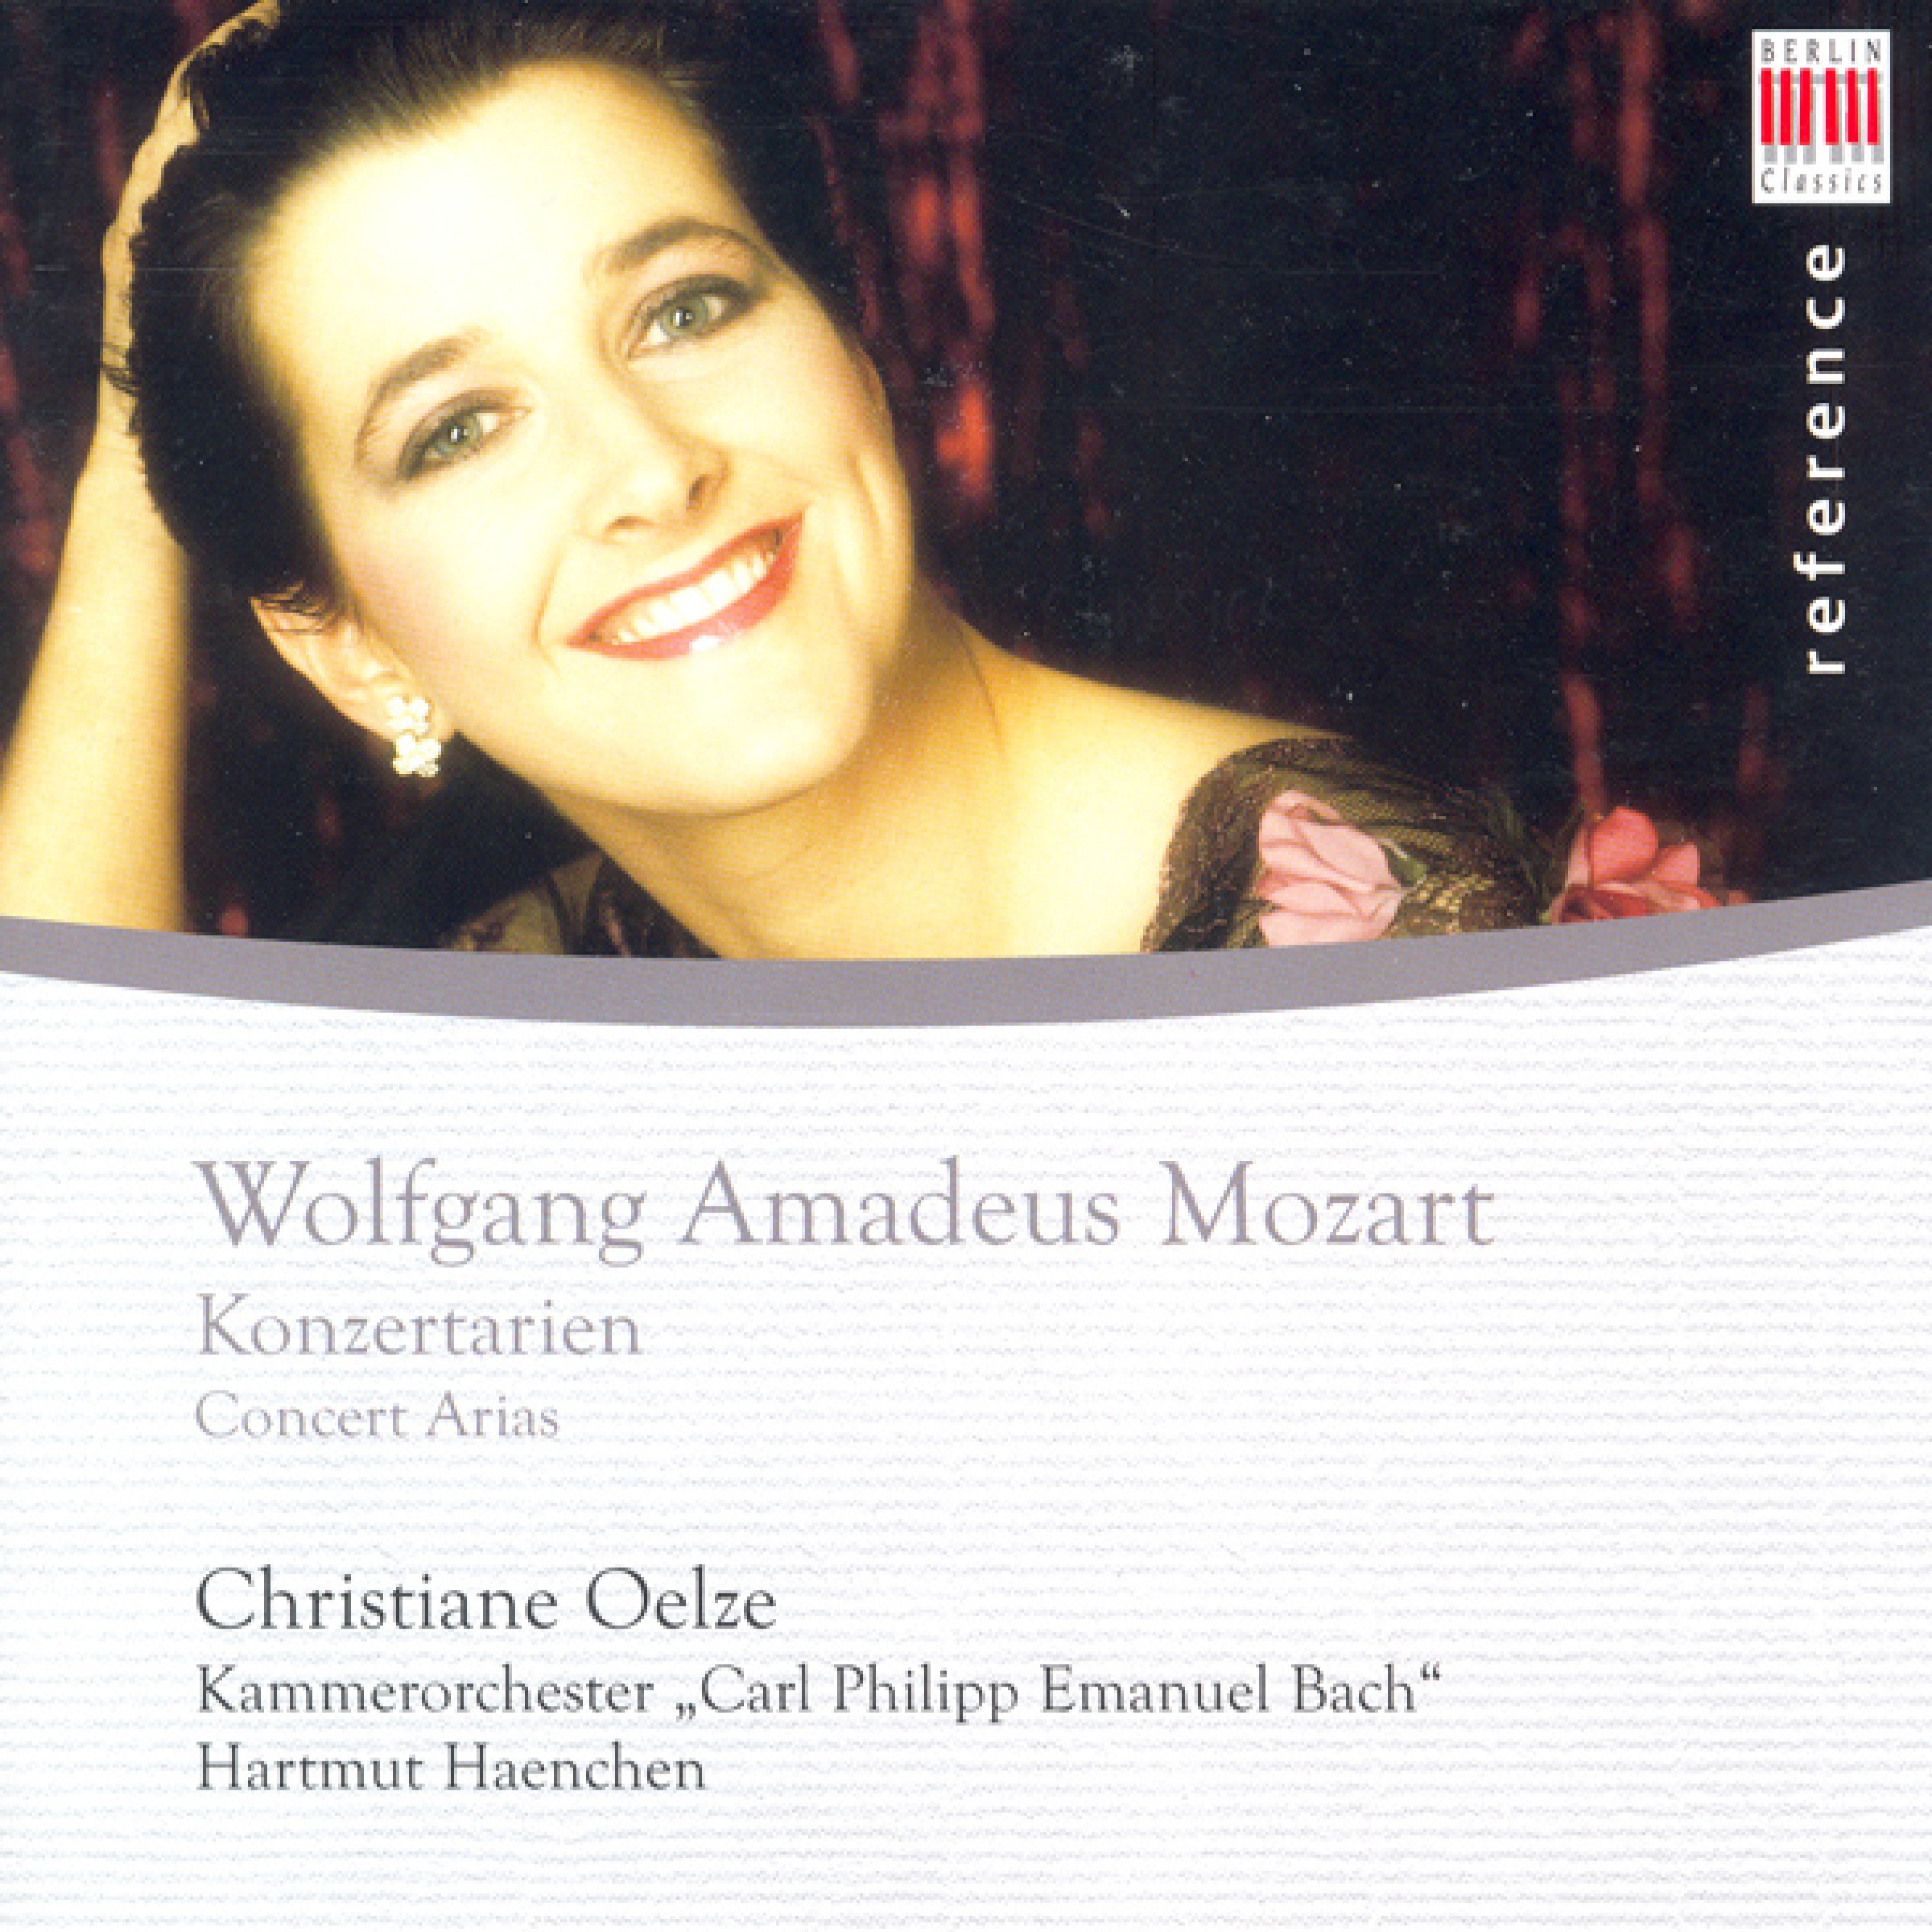 Wolfgang Amadeus Mozart: Concert Arias